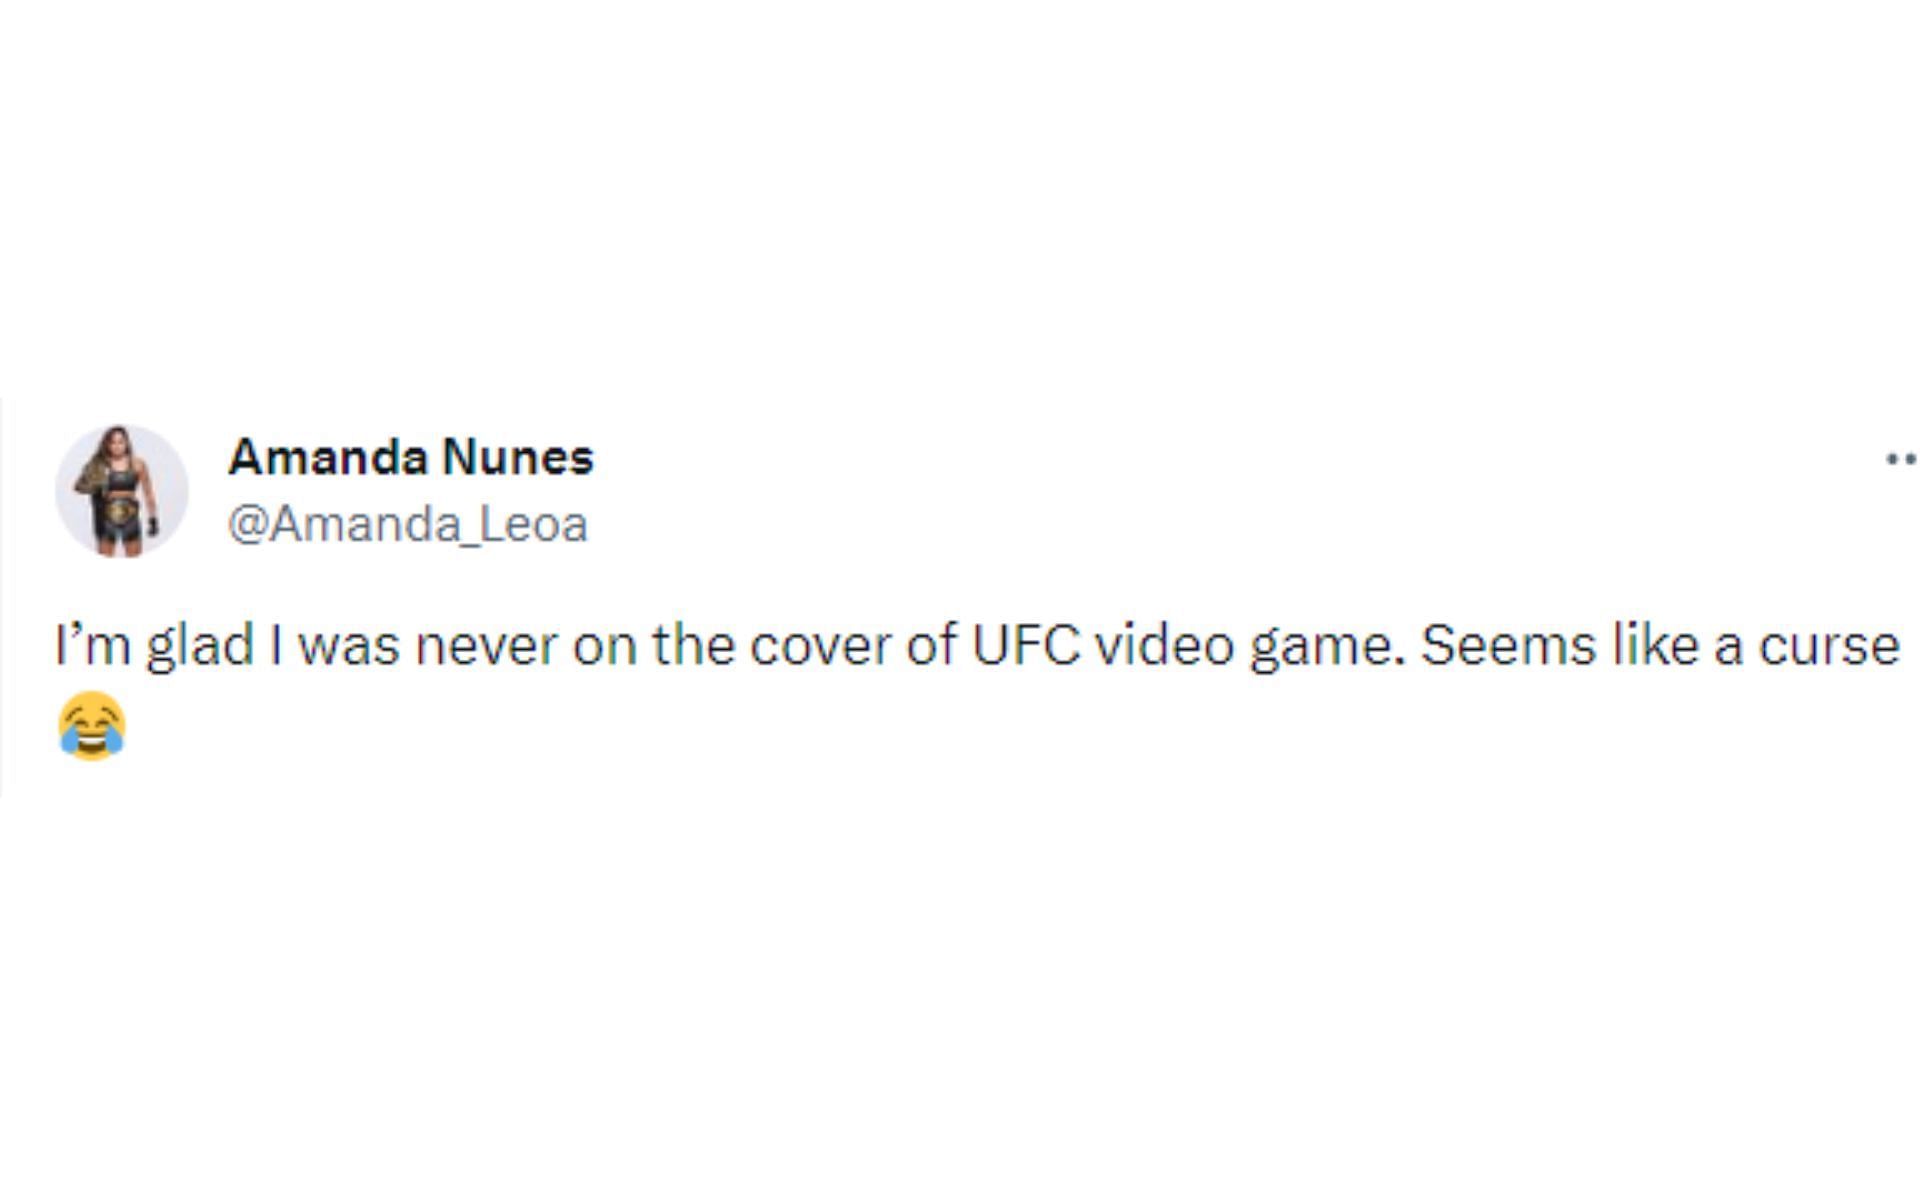 Amanda Nunes tweet regarding video game cover